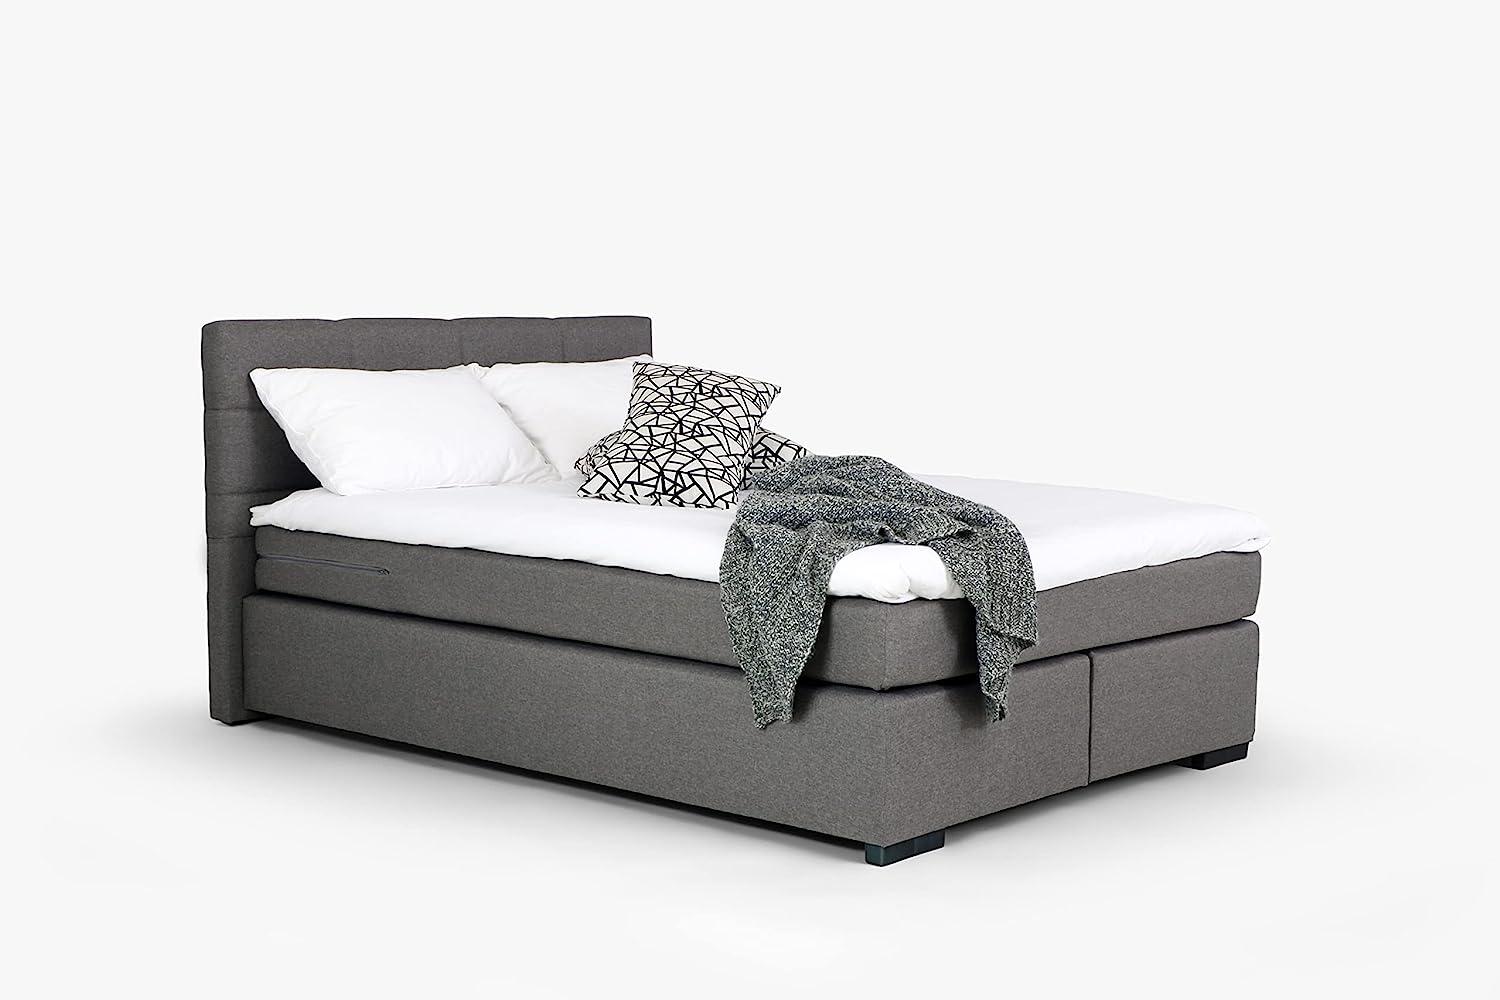 Mivano Beast Boxbett, Komfortables Bett mit Durchgehender Matratze (H3) und Topper, Flachgewebe Karoo Grau, Liegefläche 140 x 200 cm Bild 1